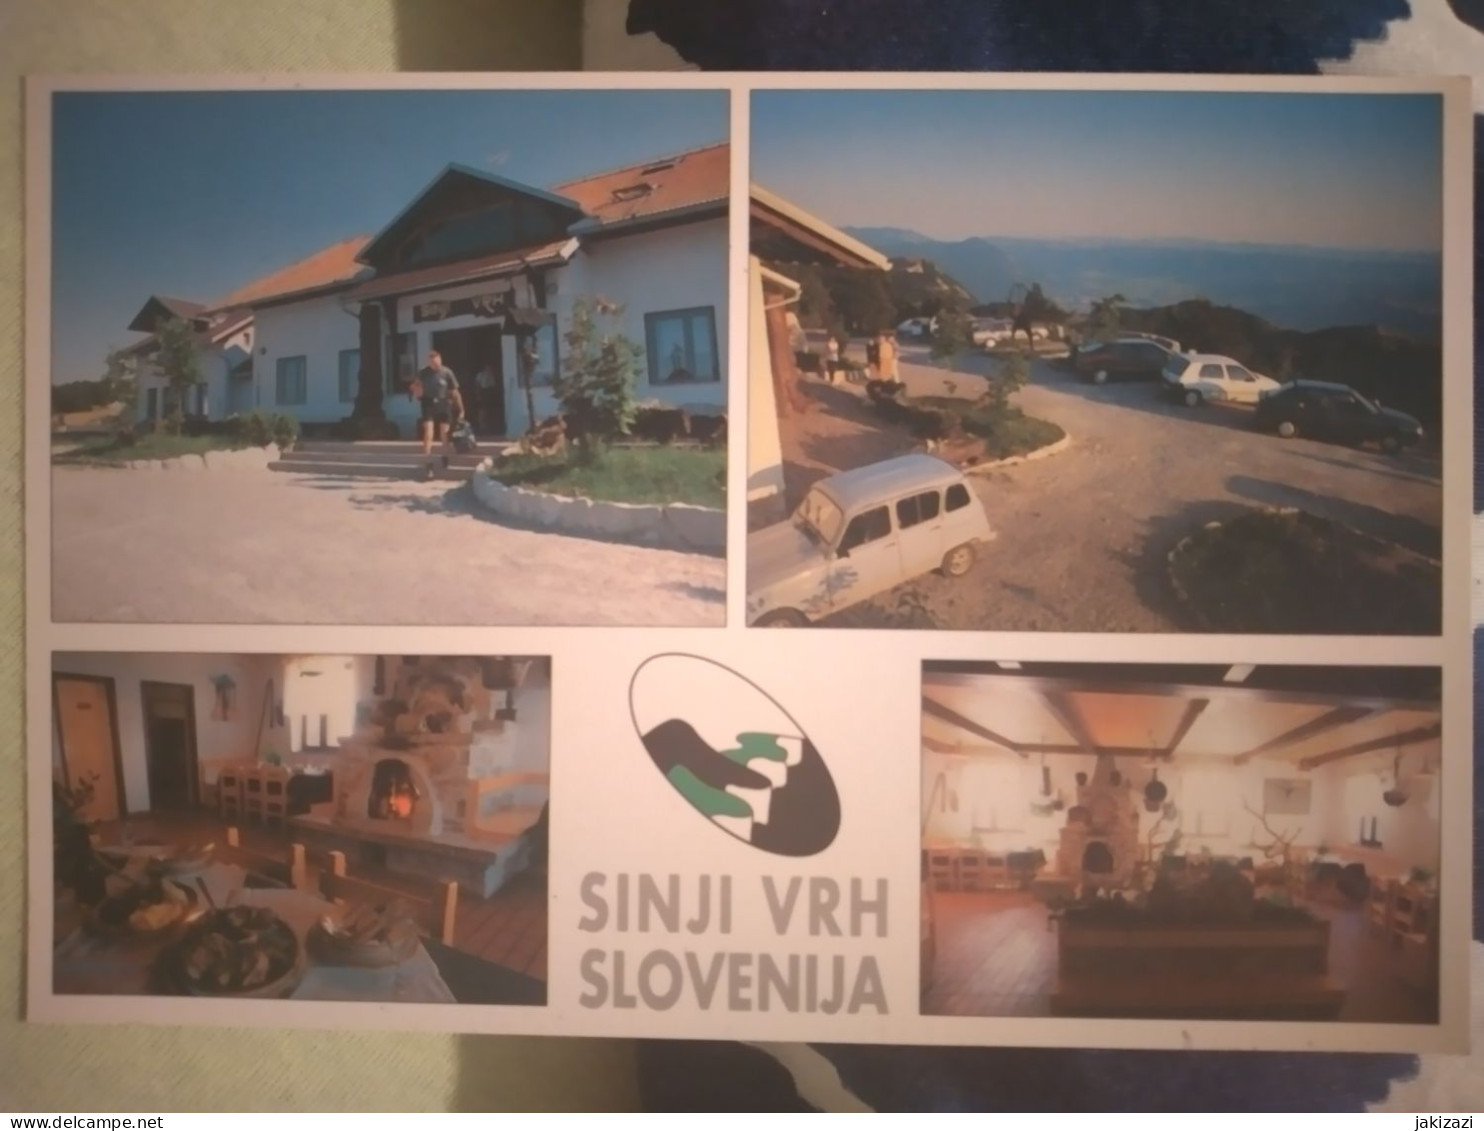 SINJI VRH. PD Ajdovščina - Slovenia